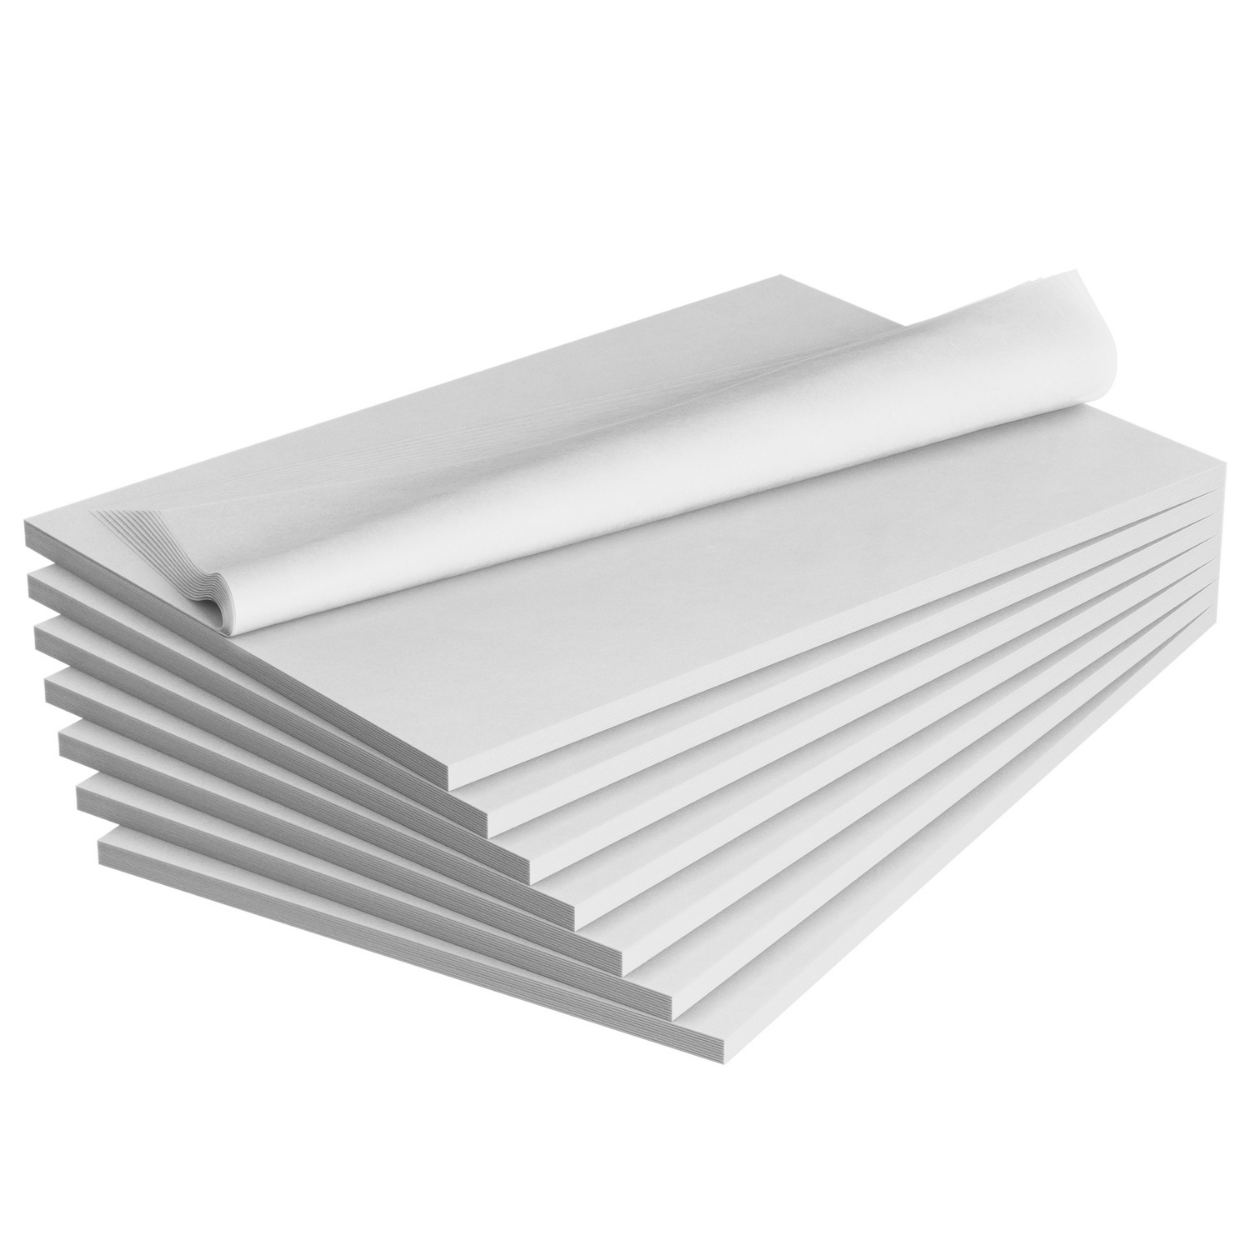  FLAWLESS PACKAGING White tissue paper 20” x 30” bulk 48 pack :  Health & Household